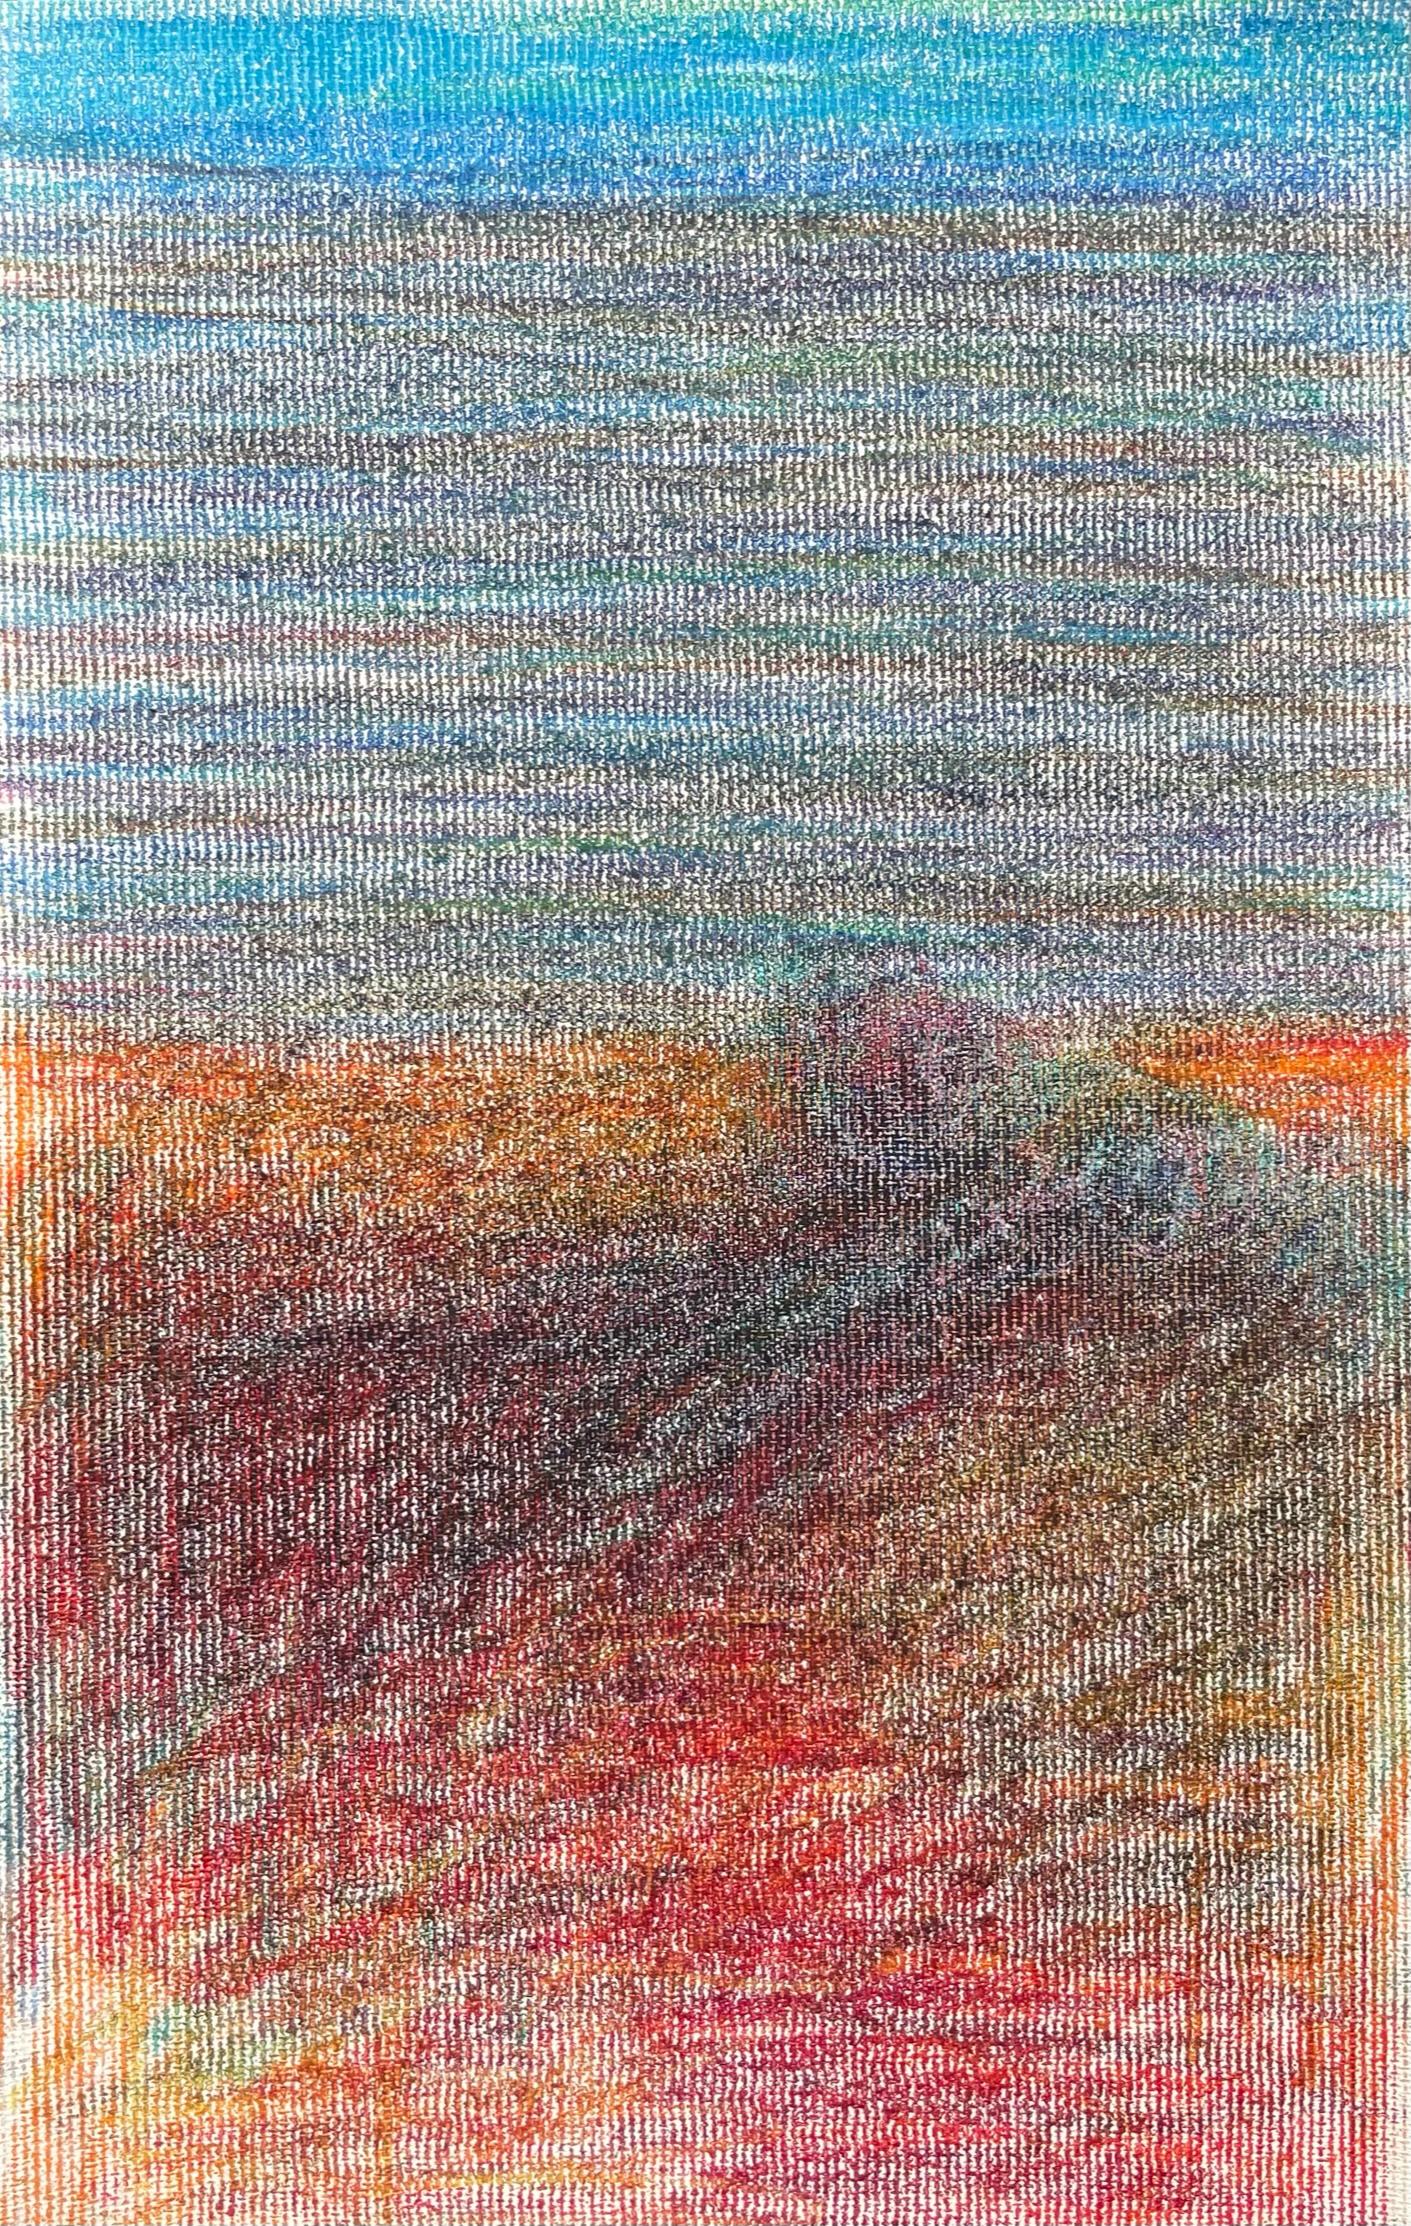 Zsolt Berszán Landscape Art – Body in the Field #7 - Zeitgenössisch, Blau, Rot, 21. Jahrhundert, Zeichnung auf Leinwand